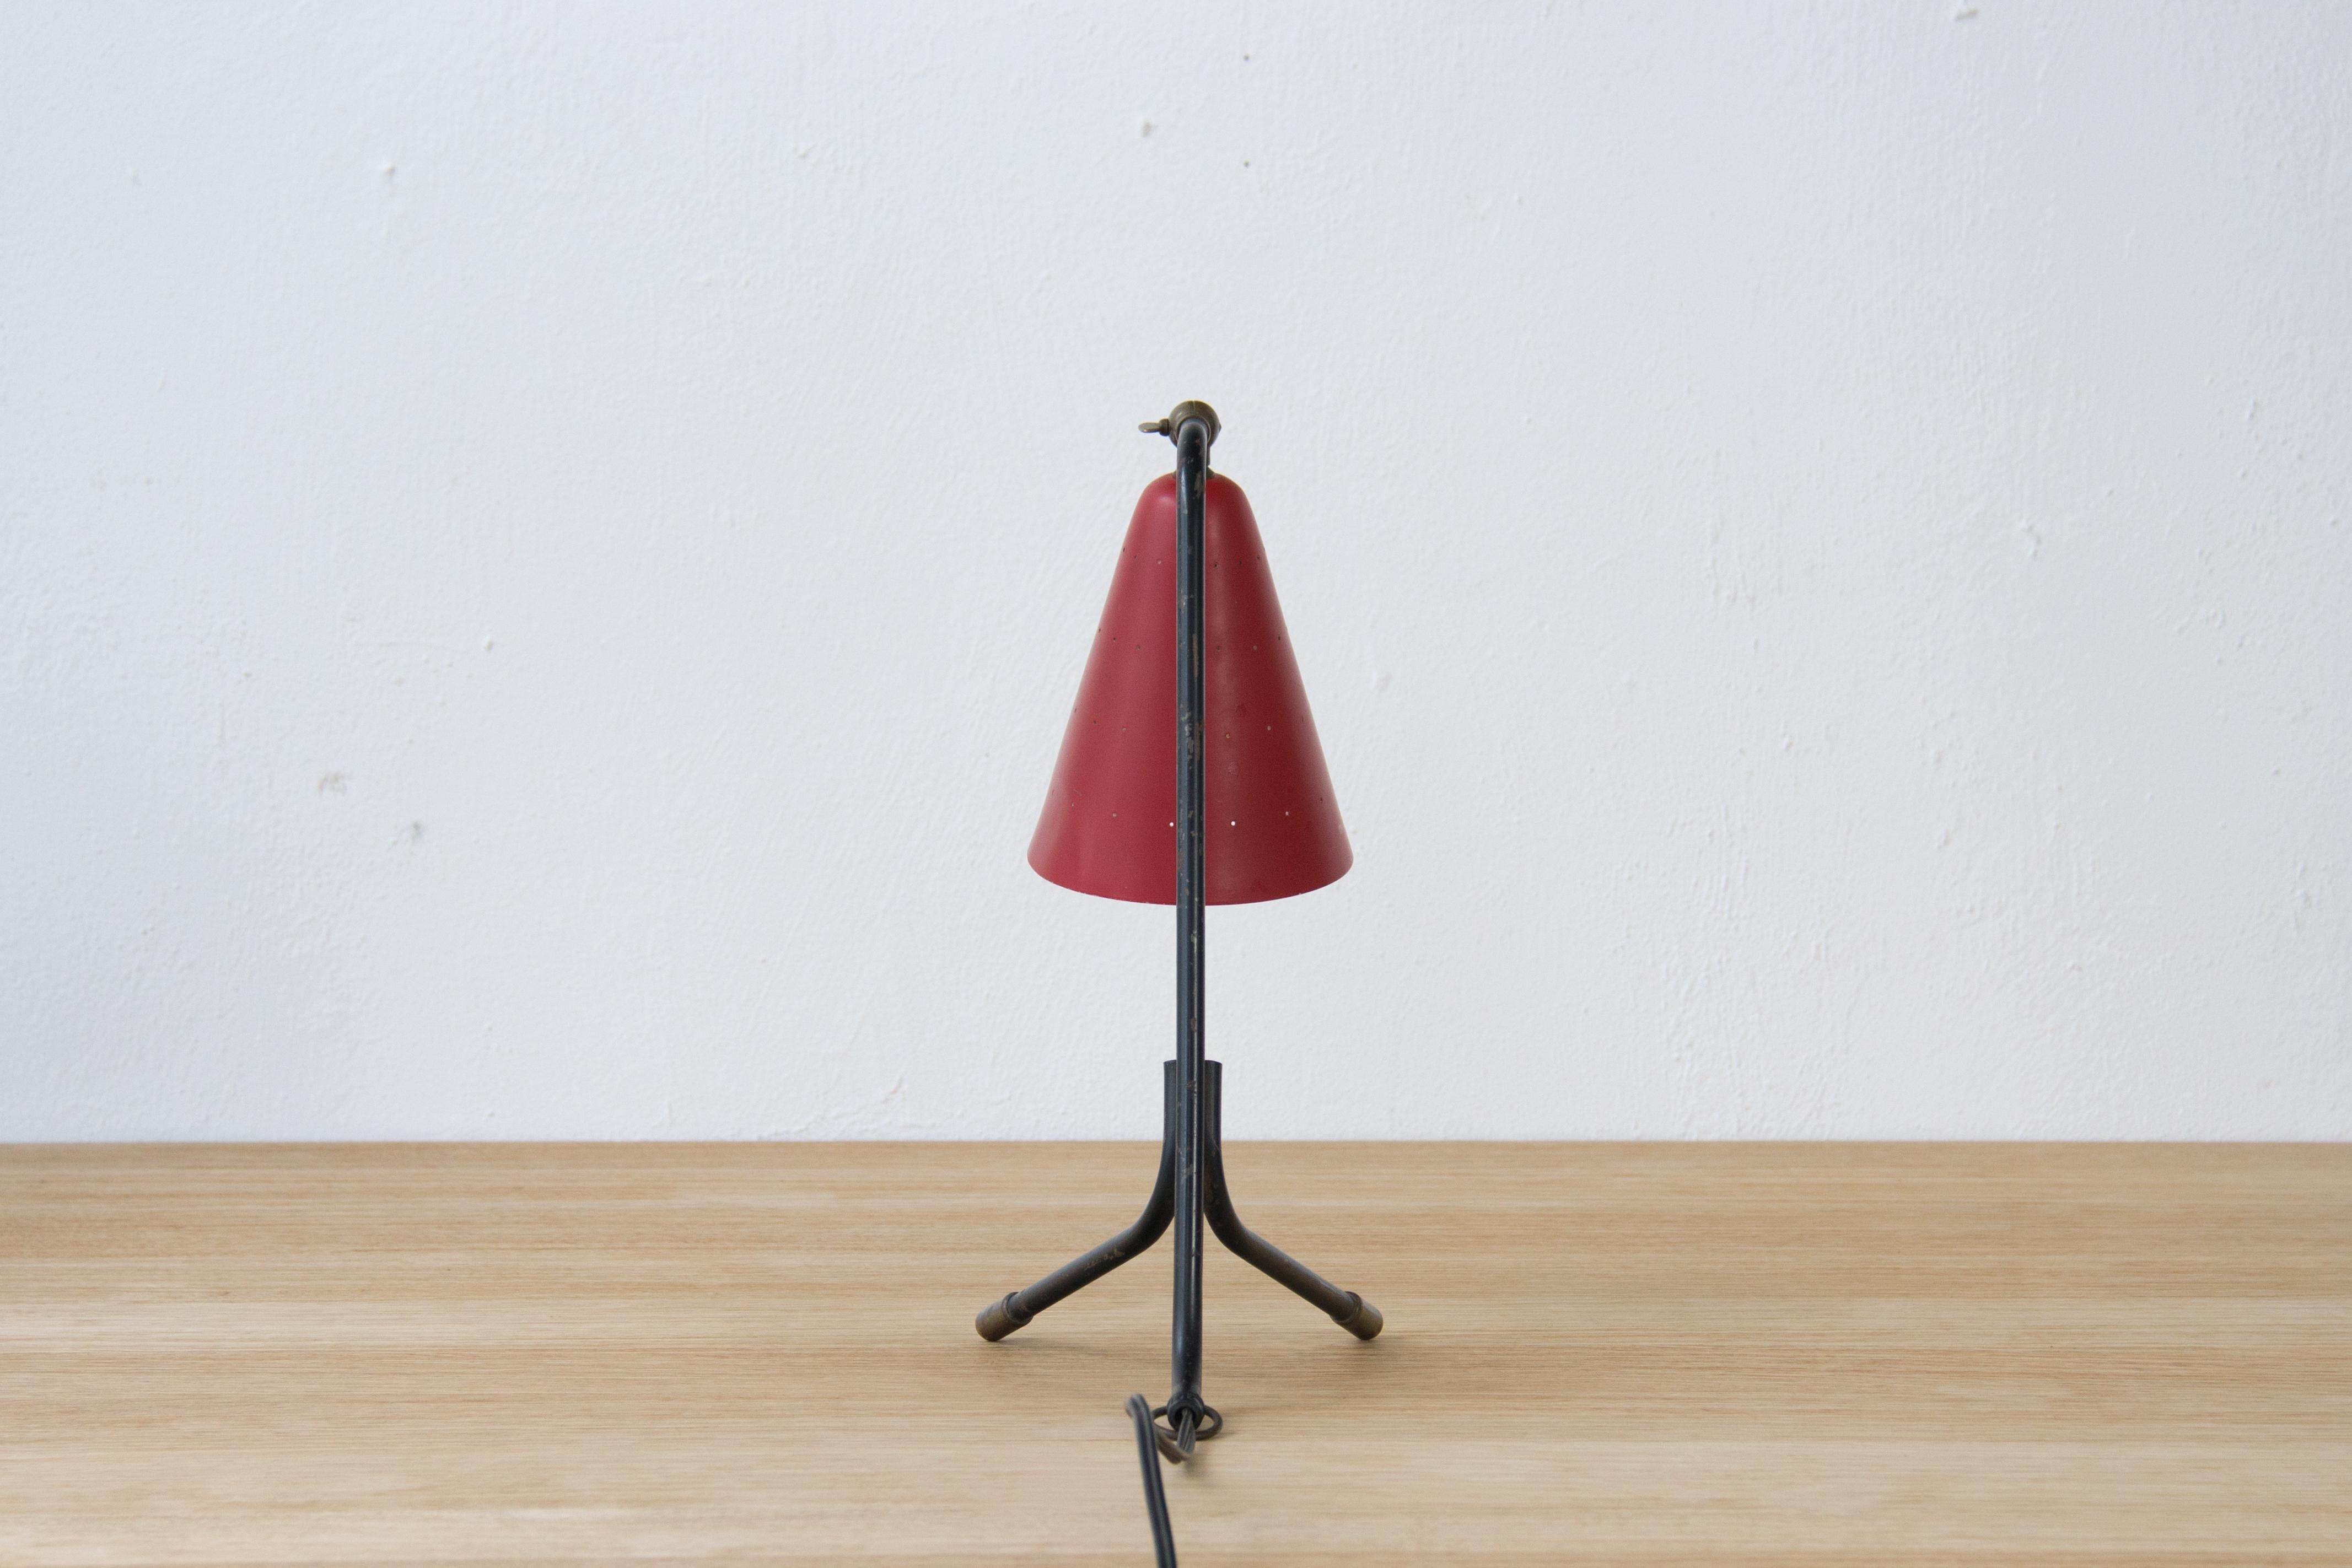 Scandinavian Modern Adjustable Table Lamp by Svend Aage Holm Sorensen for Holm Sorensen & Co For Sale